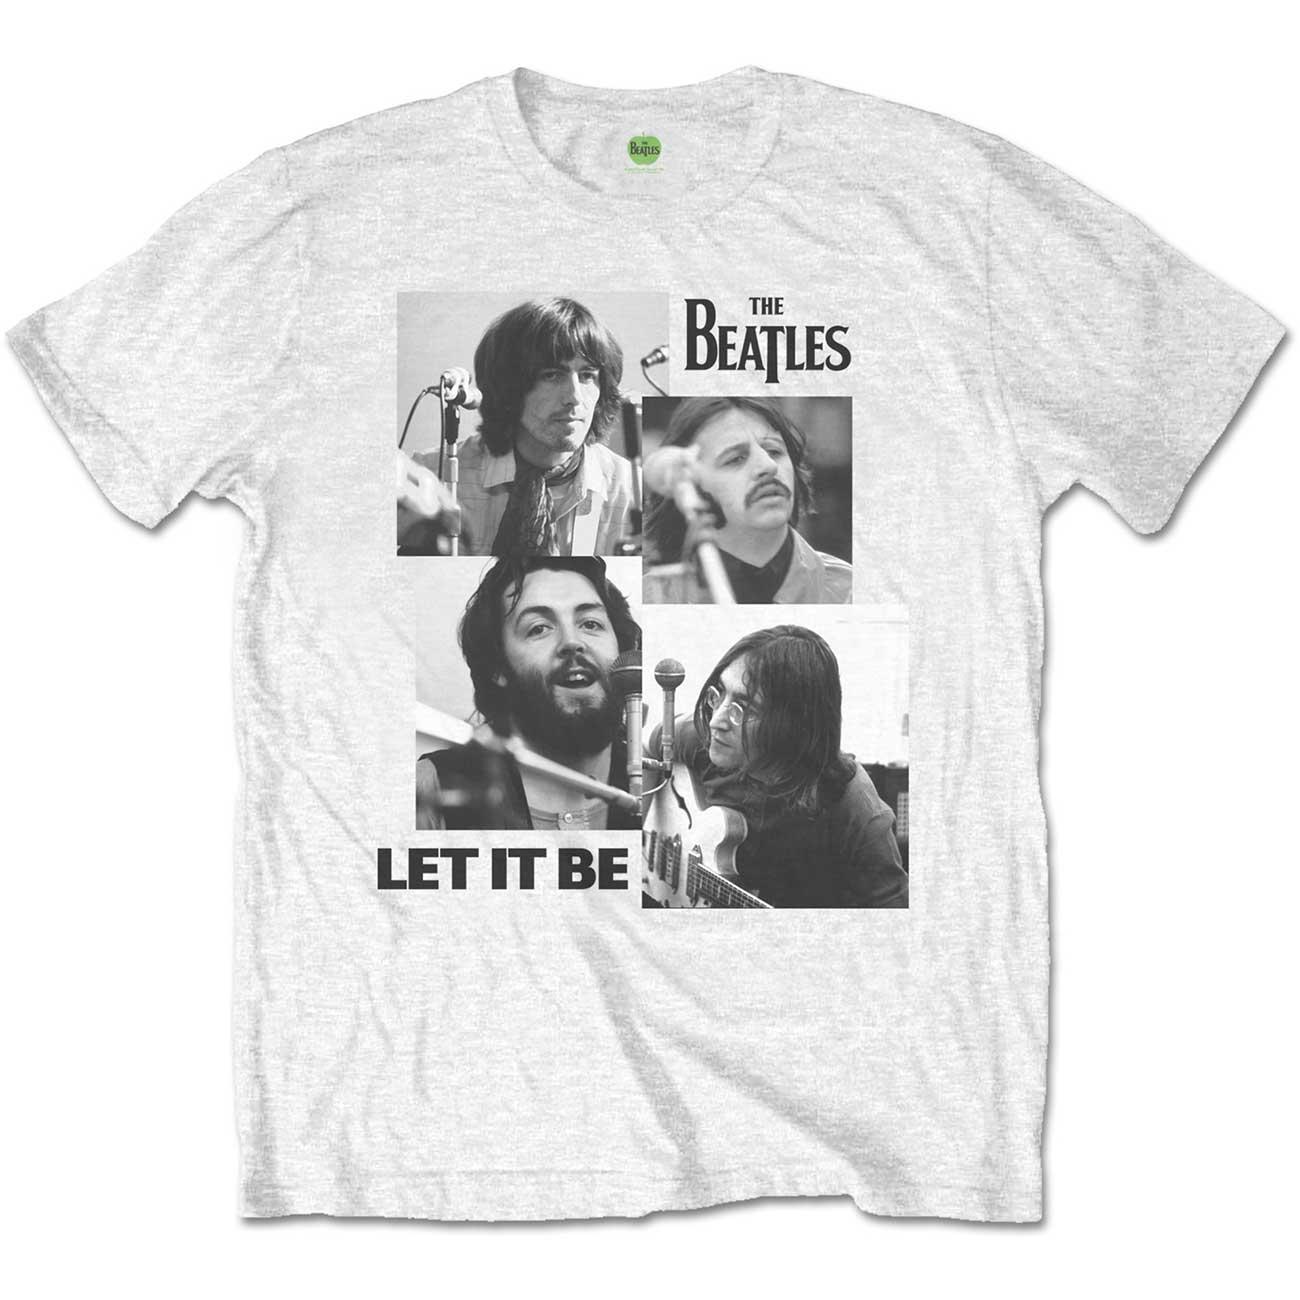 (ザ・ビートルズ) The Beatles オフィシャル商品 ユニセックス Let It Be Tシャツ 半袖 トップス 【海外通販】